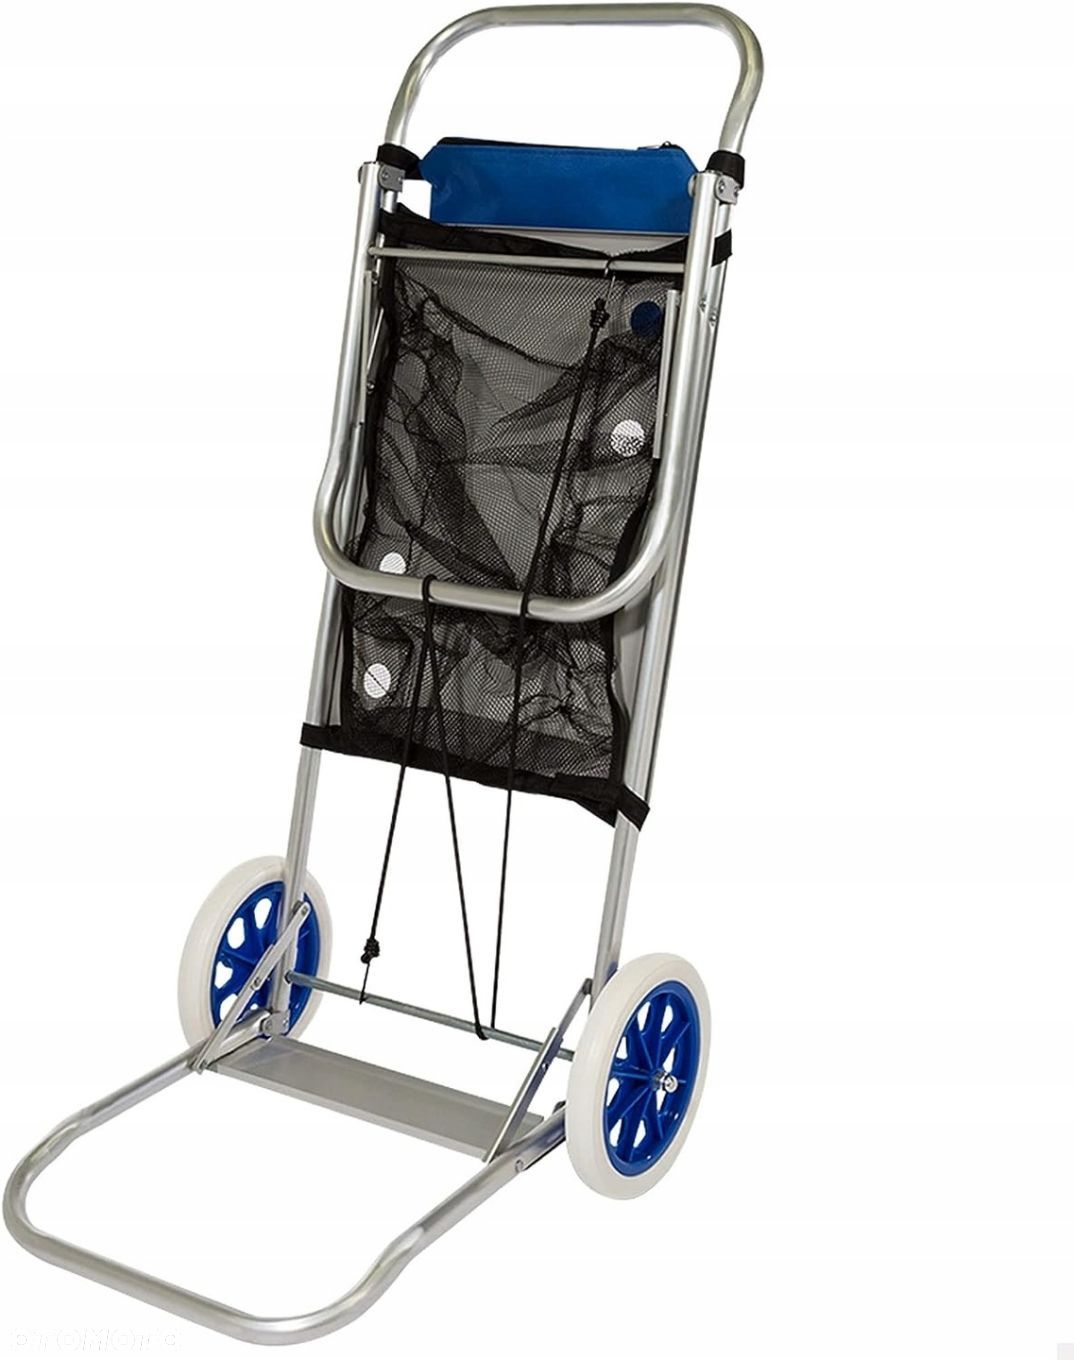 Aktive Beach aluminiowy wózek plażowy niekompletny - 1